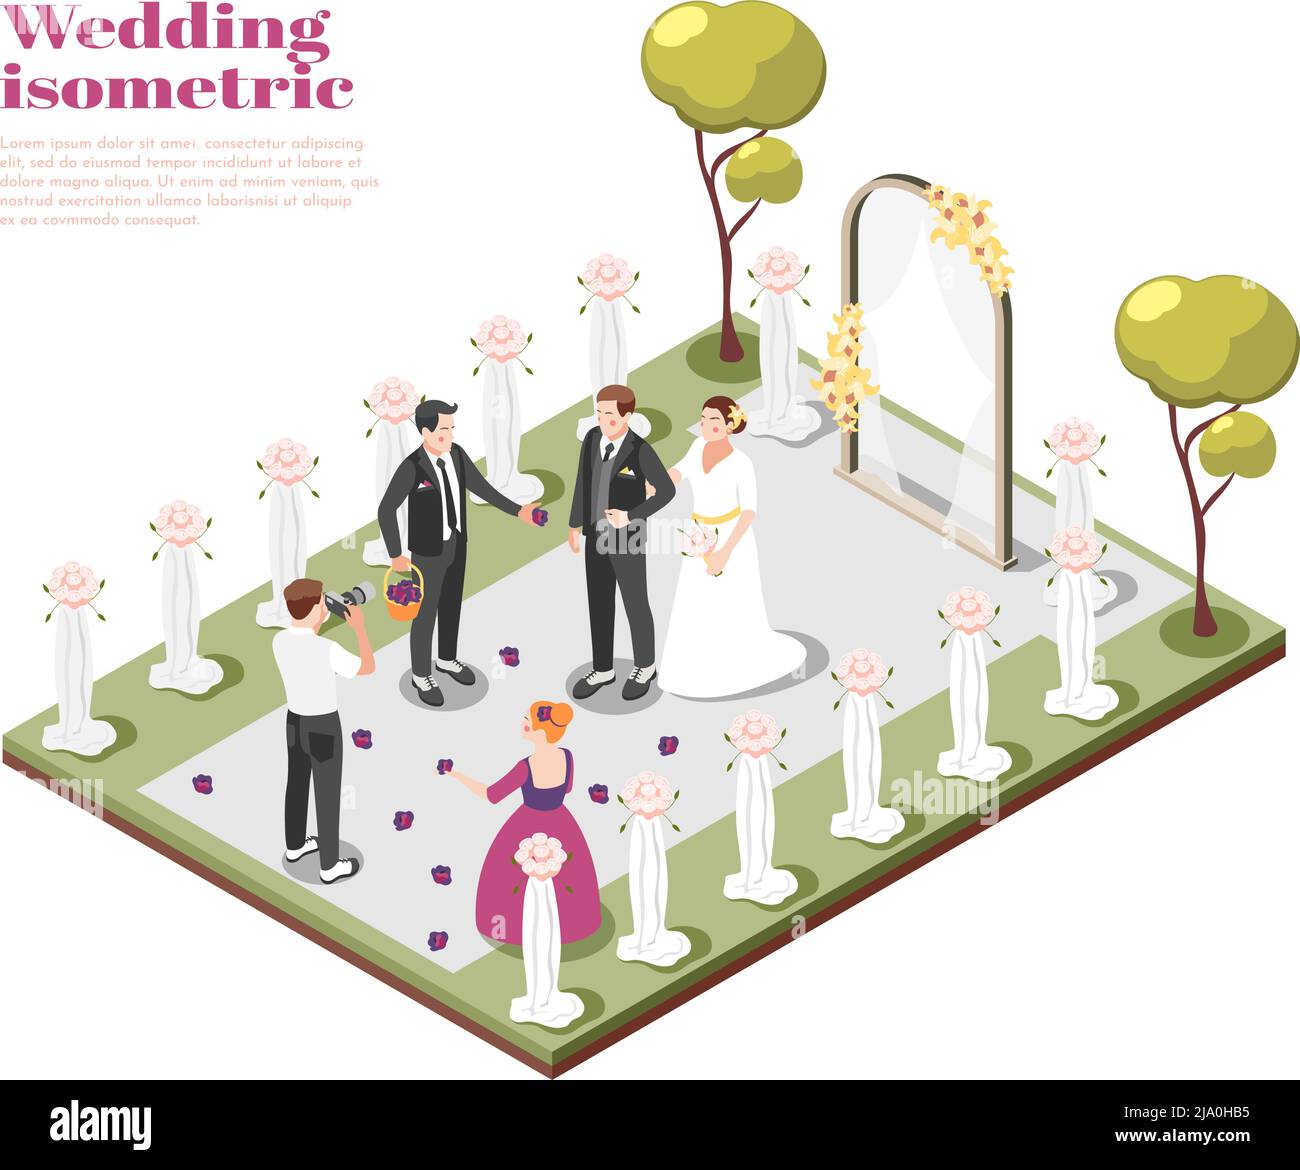 Hochzeit isometrische Komposition mit Paar heiraten auf Outdoor-Hochzeitszeremonie Vektor-Illustration Stock Vektor